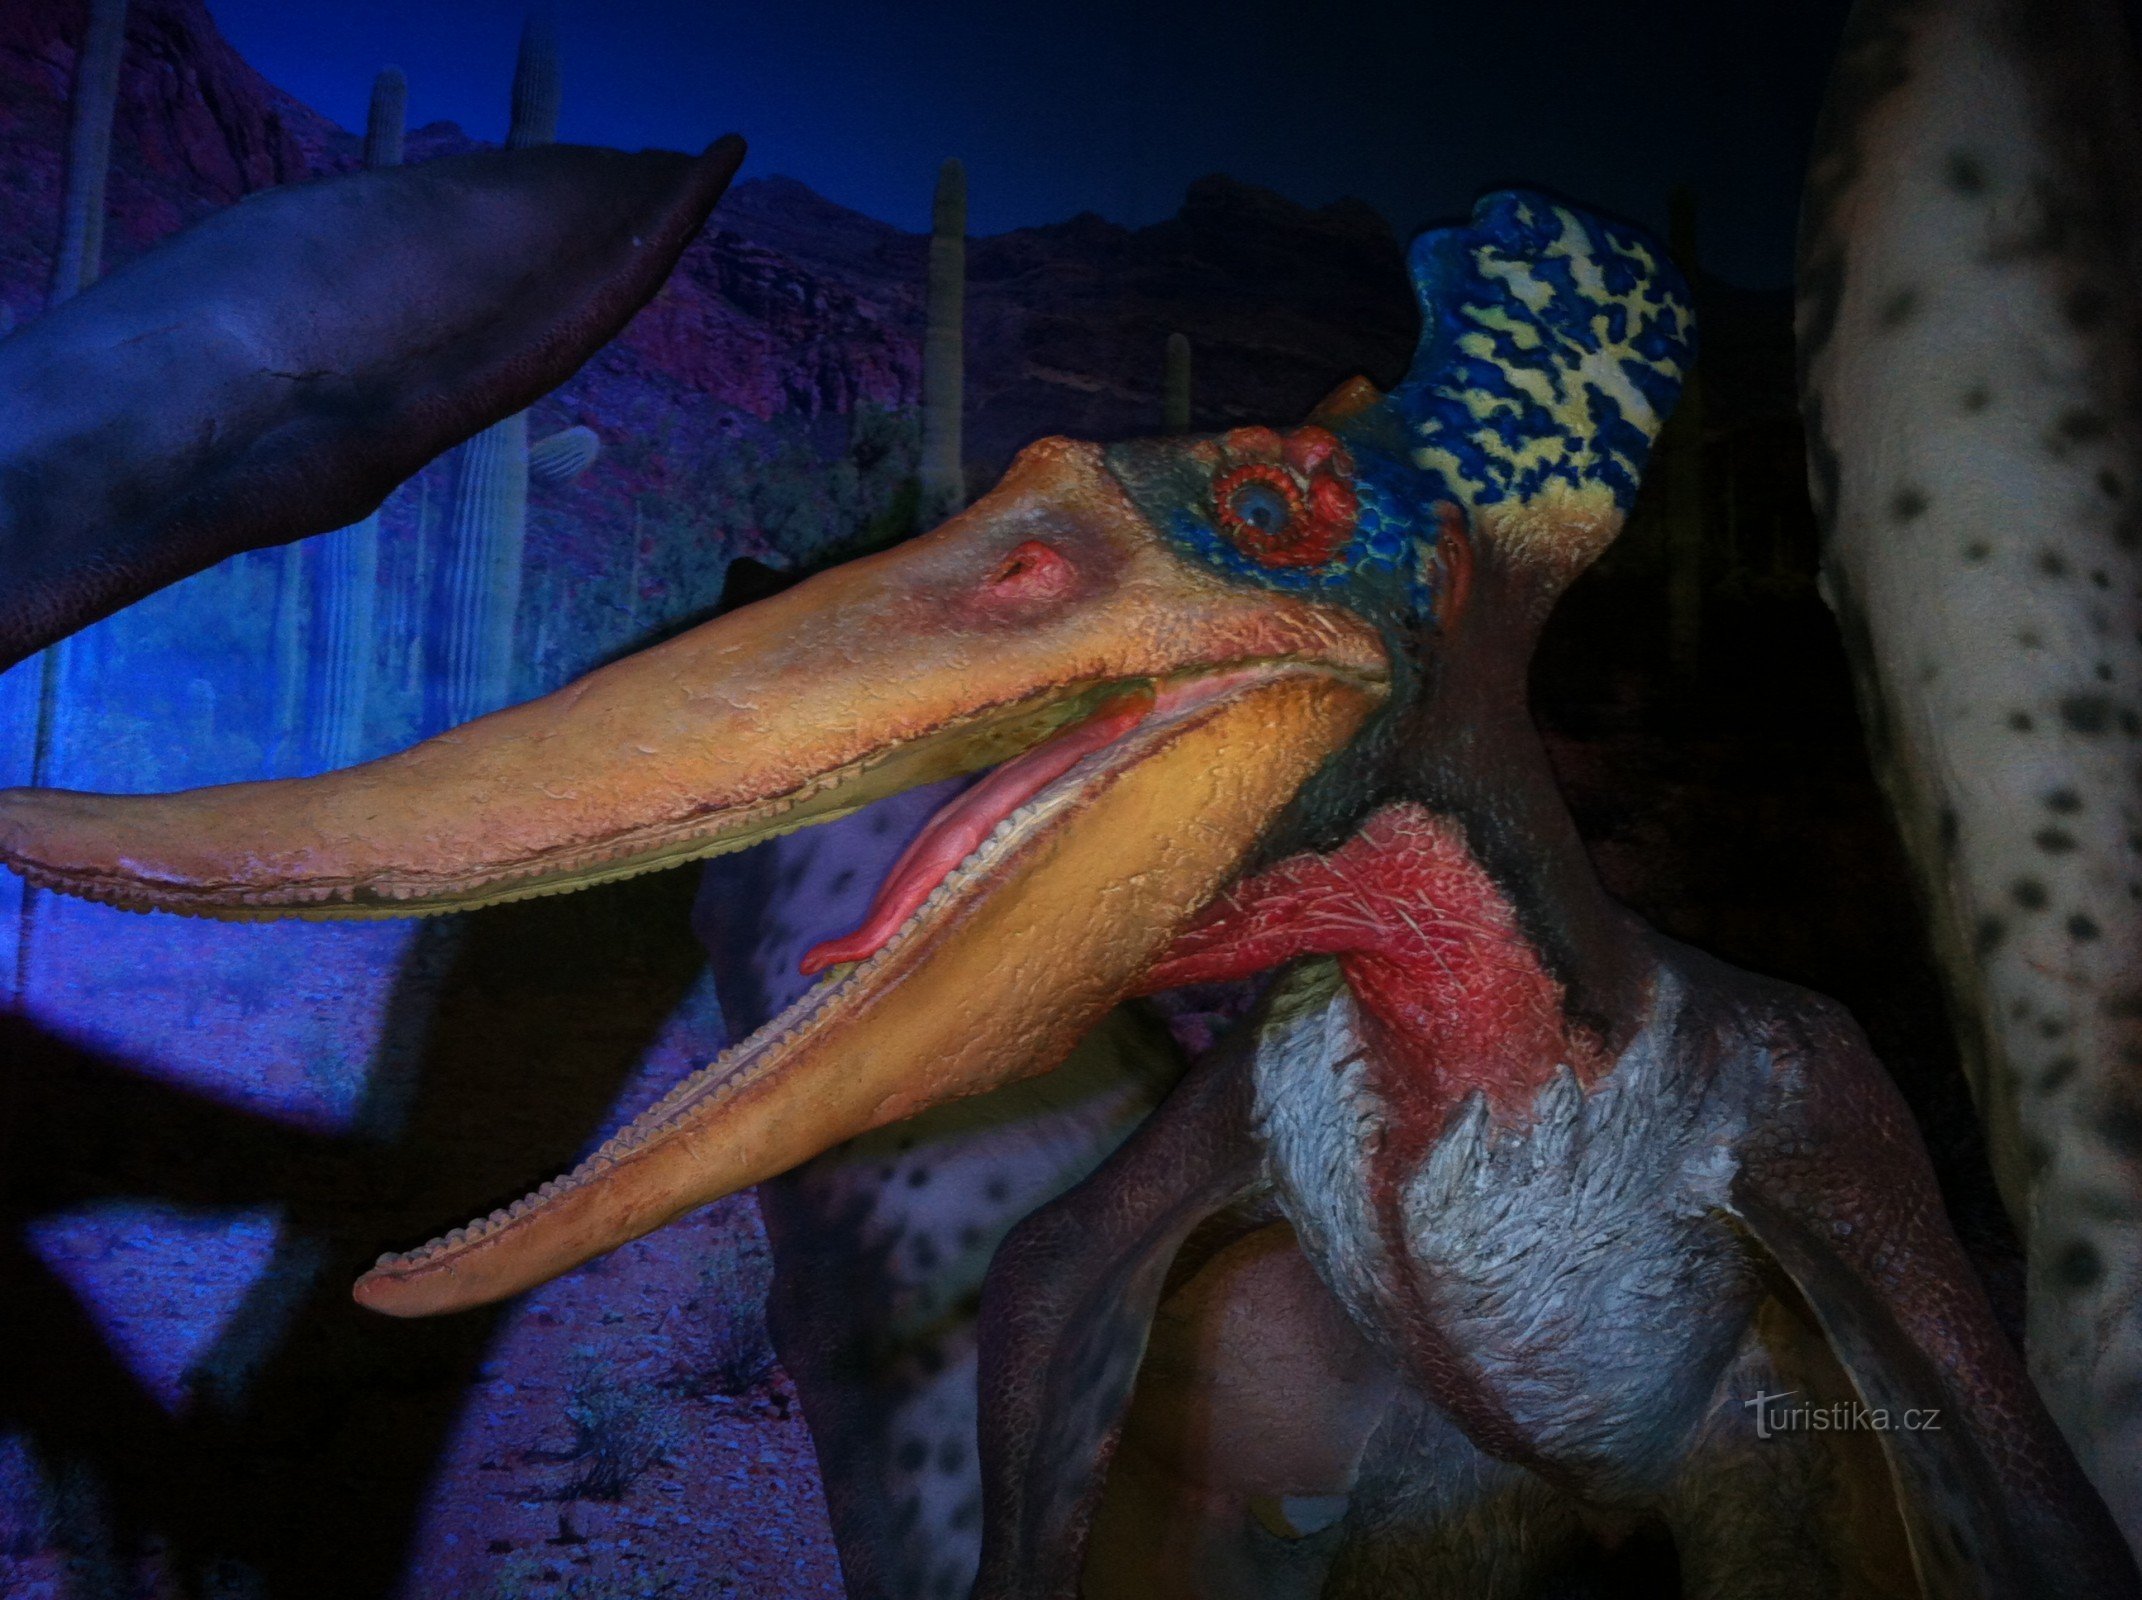 JEDINSTVENA IZLOŽBA Povratak dinosaura - DinoPark Tour 2015.